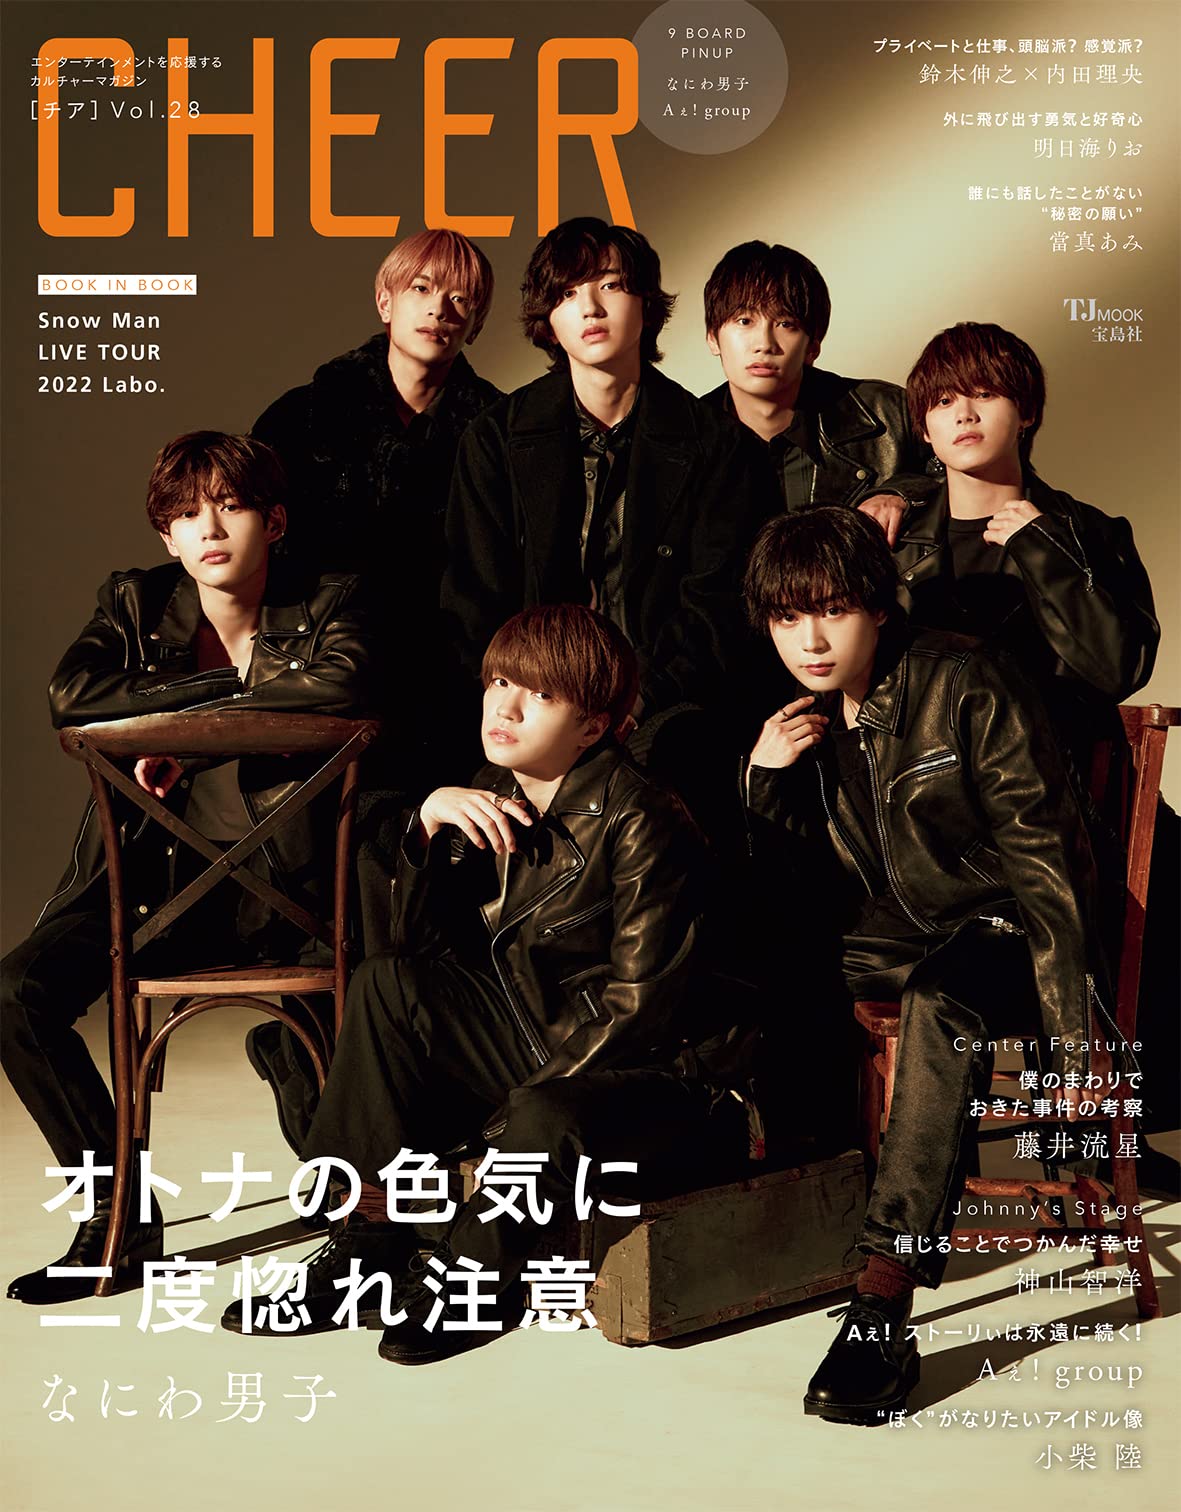 CHEER Vol.28【表紙：なにわ男子】【9 BOARD PINUP：なにわ男子／Aぇ! group】 (TJMOOK)